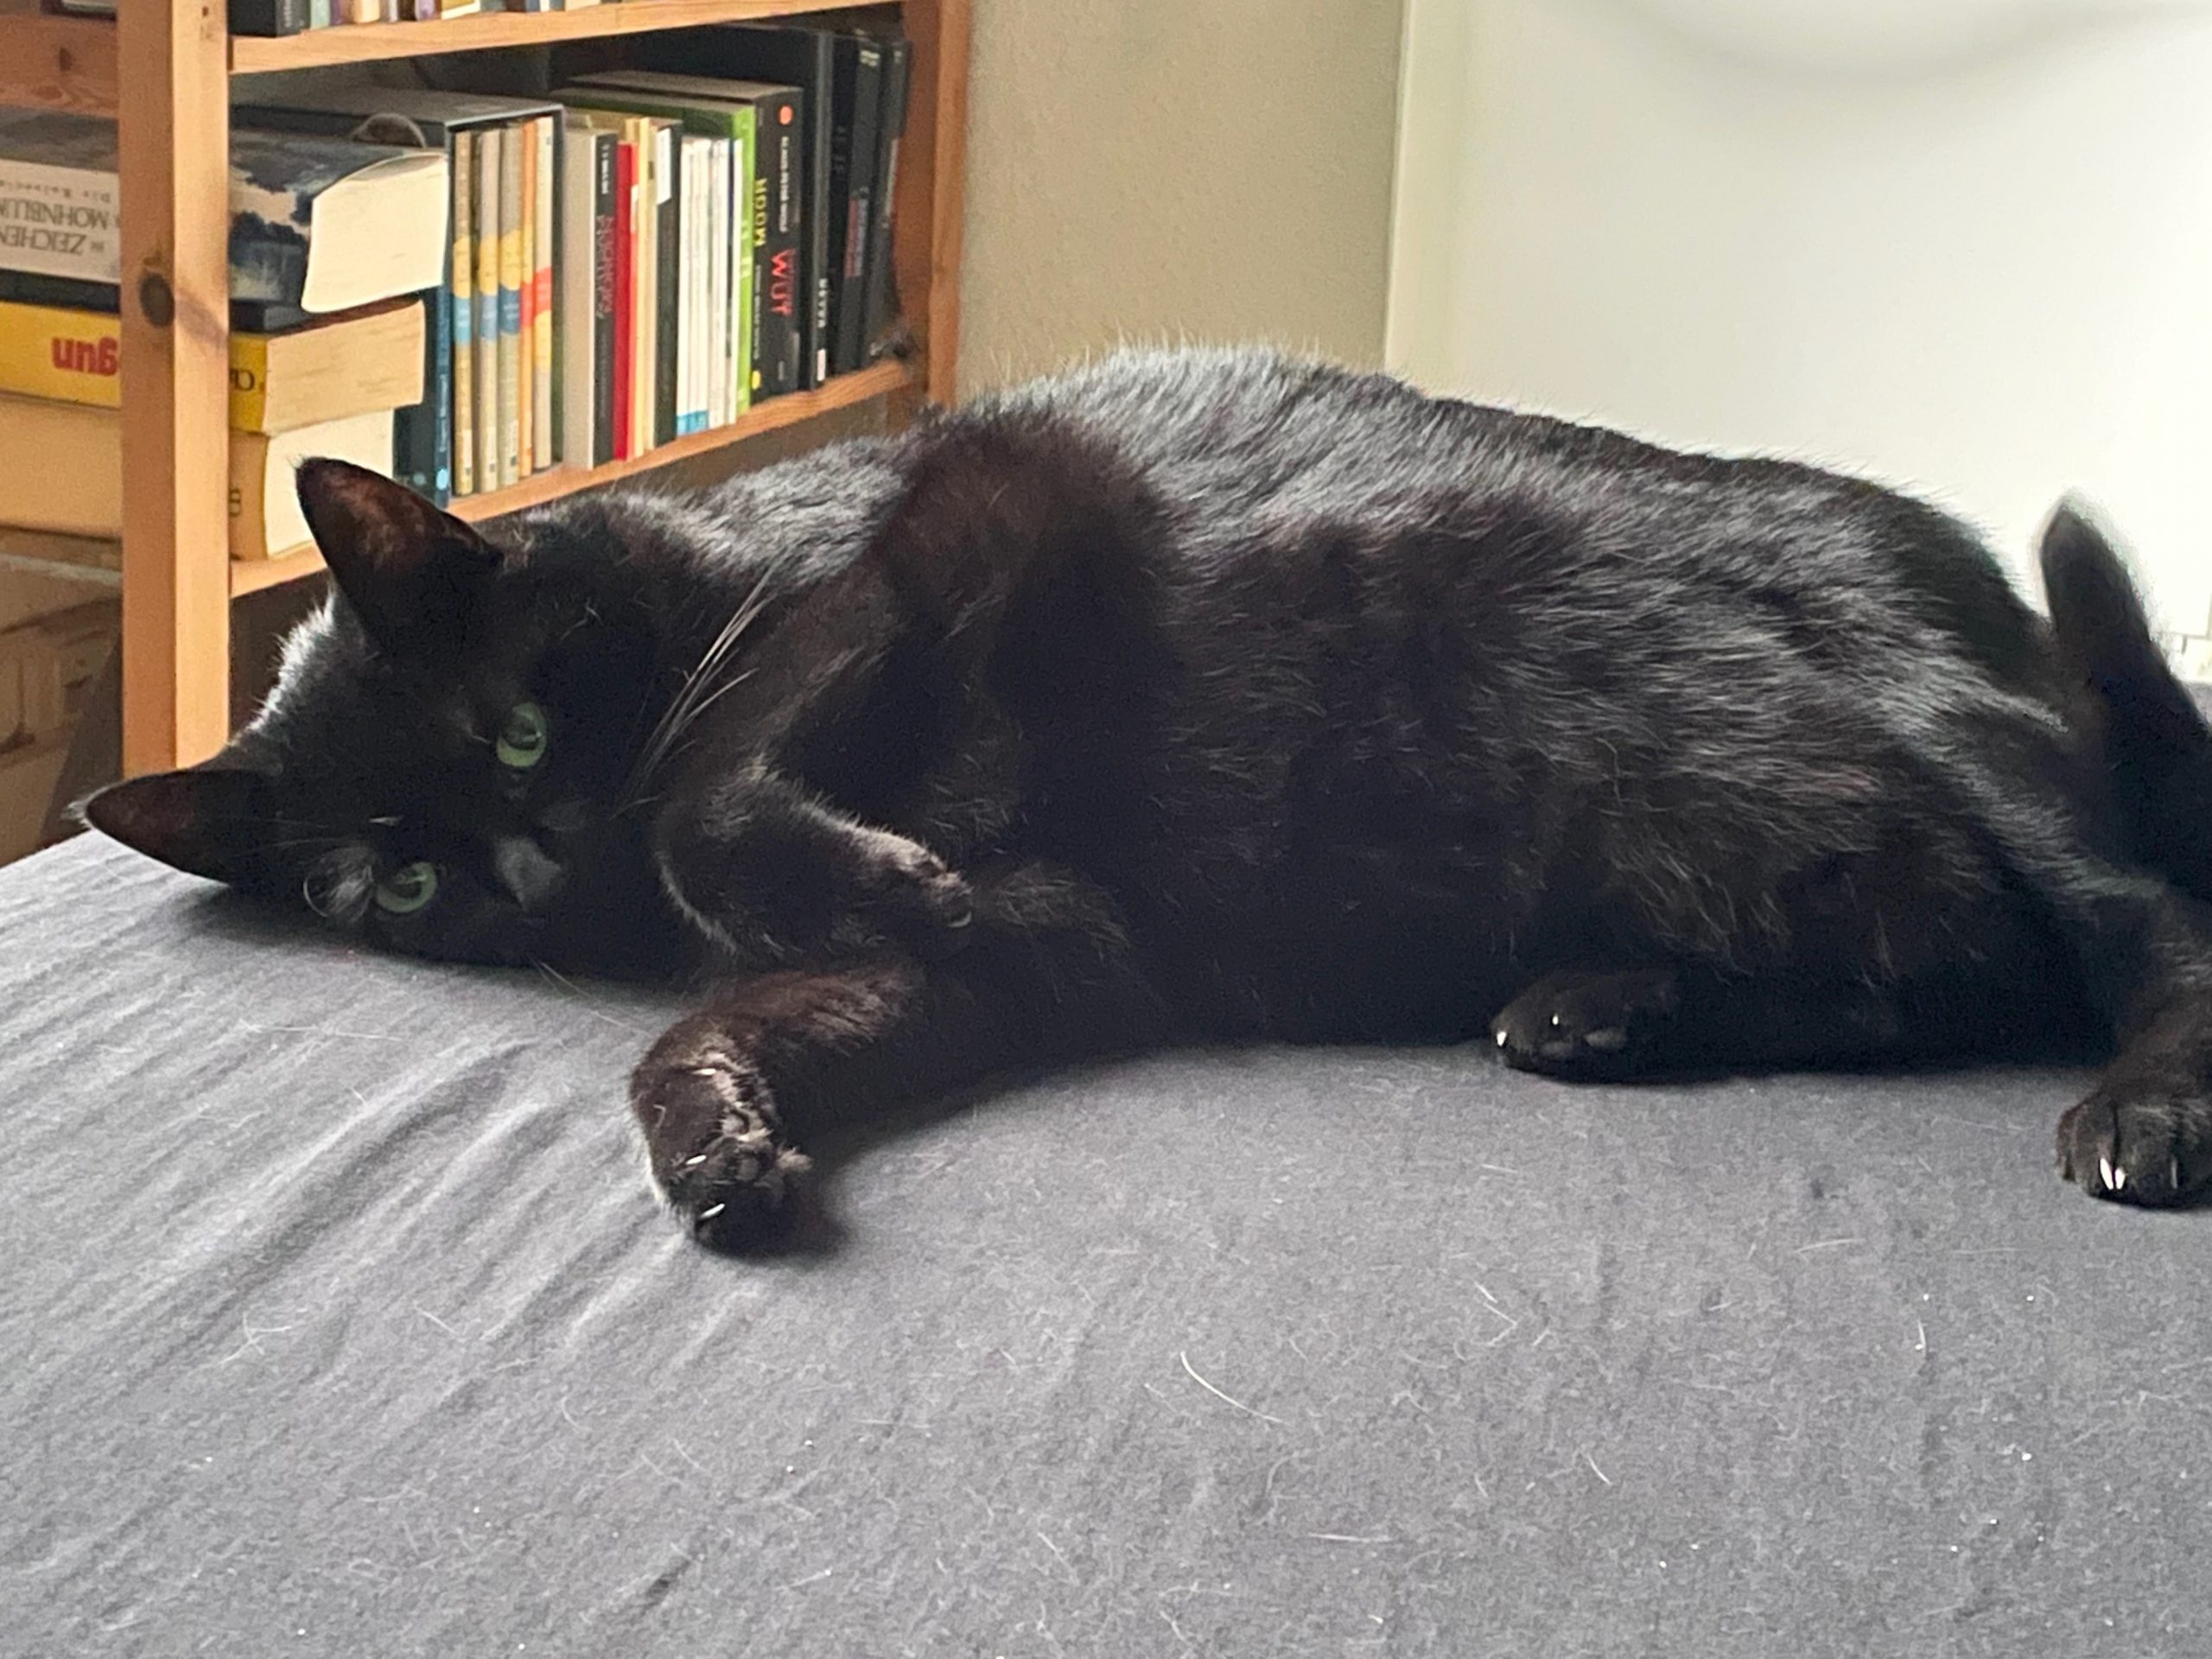 Meine schwarze Katze Ziva auf dem Bett mit Katzenhaaren im Vordergrund